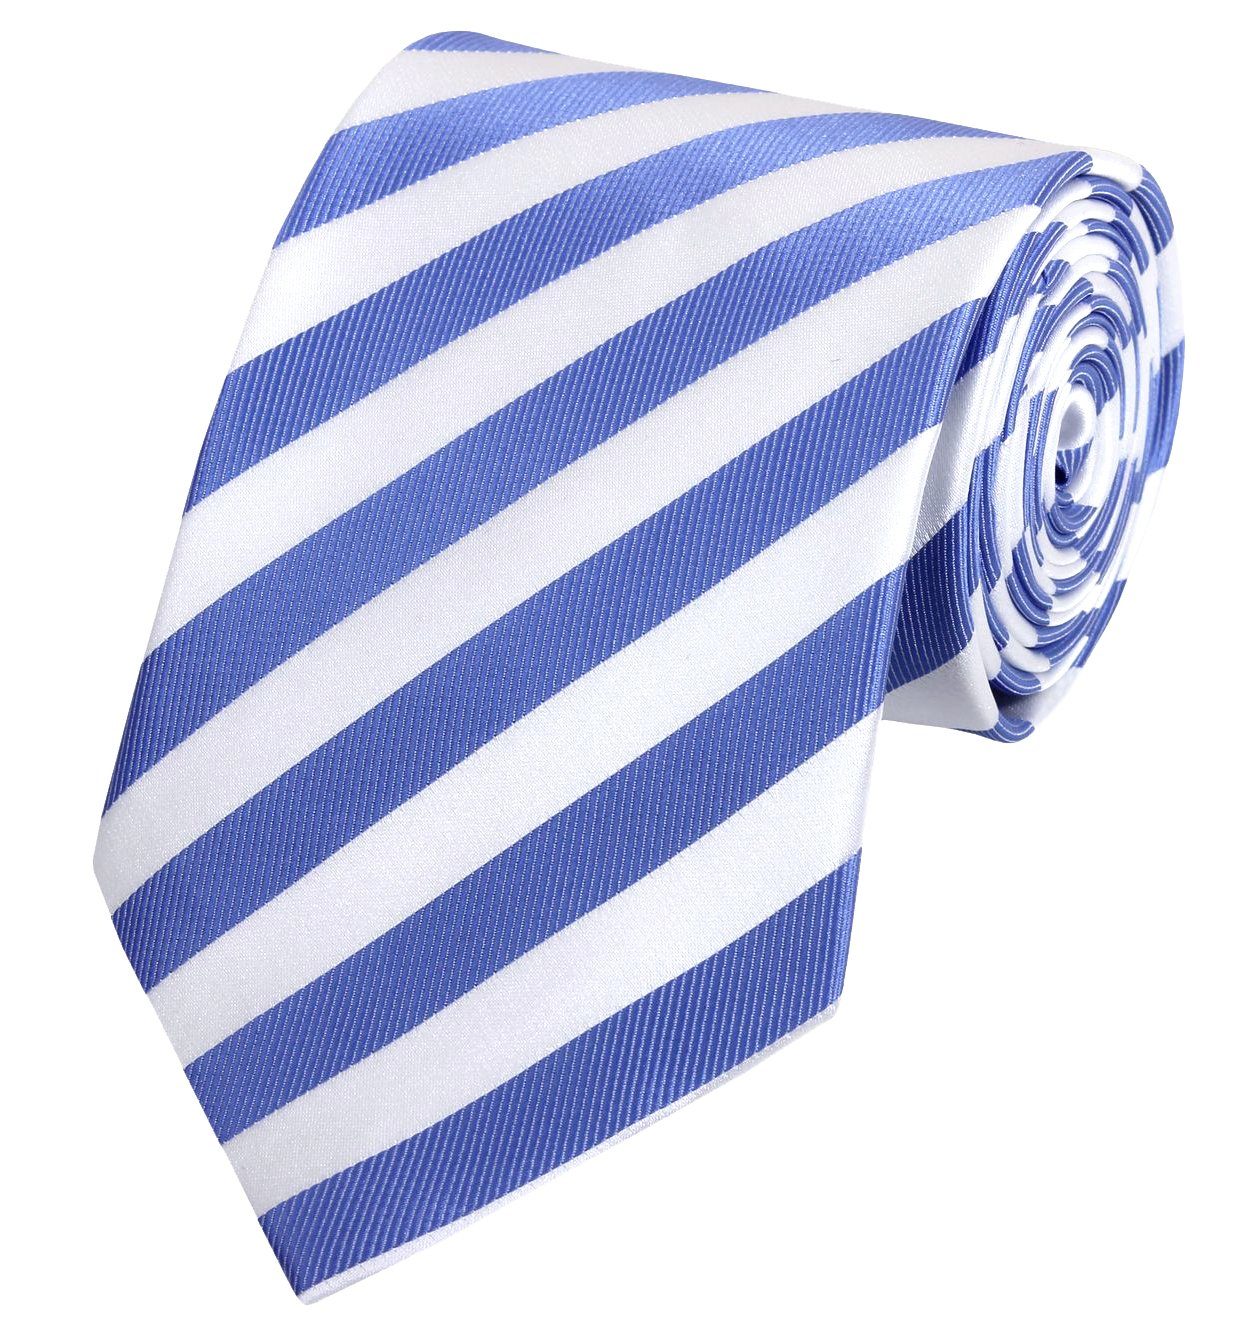 Fabio Farini Krawatte gestreifte Herren Krawatte - Tie mit Streifen in 6cm oder 8cm Breite (ohne Box, Gestreift) Schmal (6cm), Royalblau/Weiß